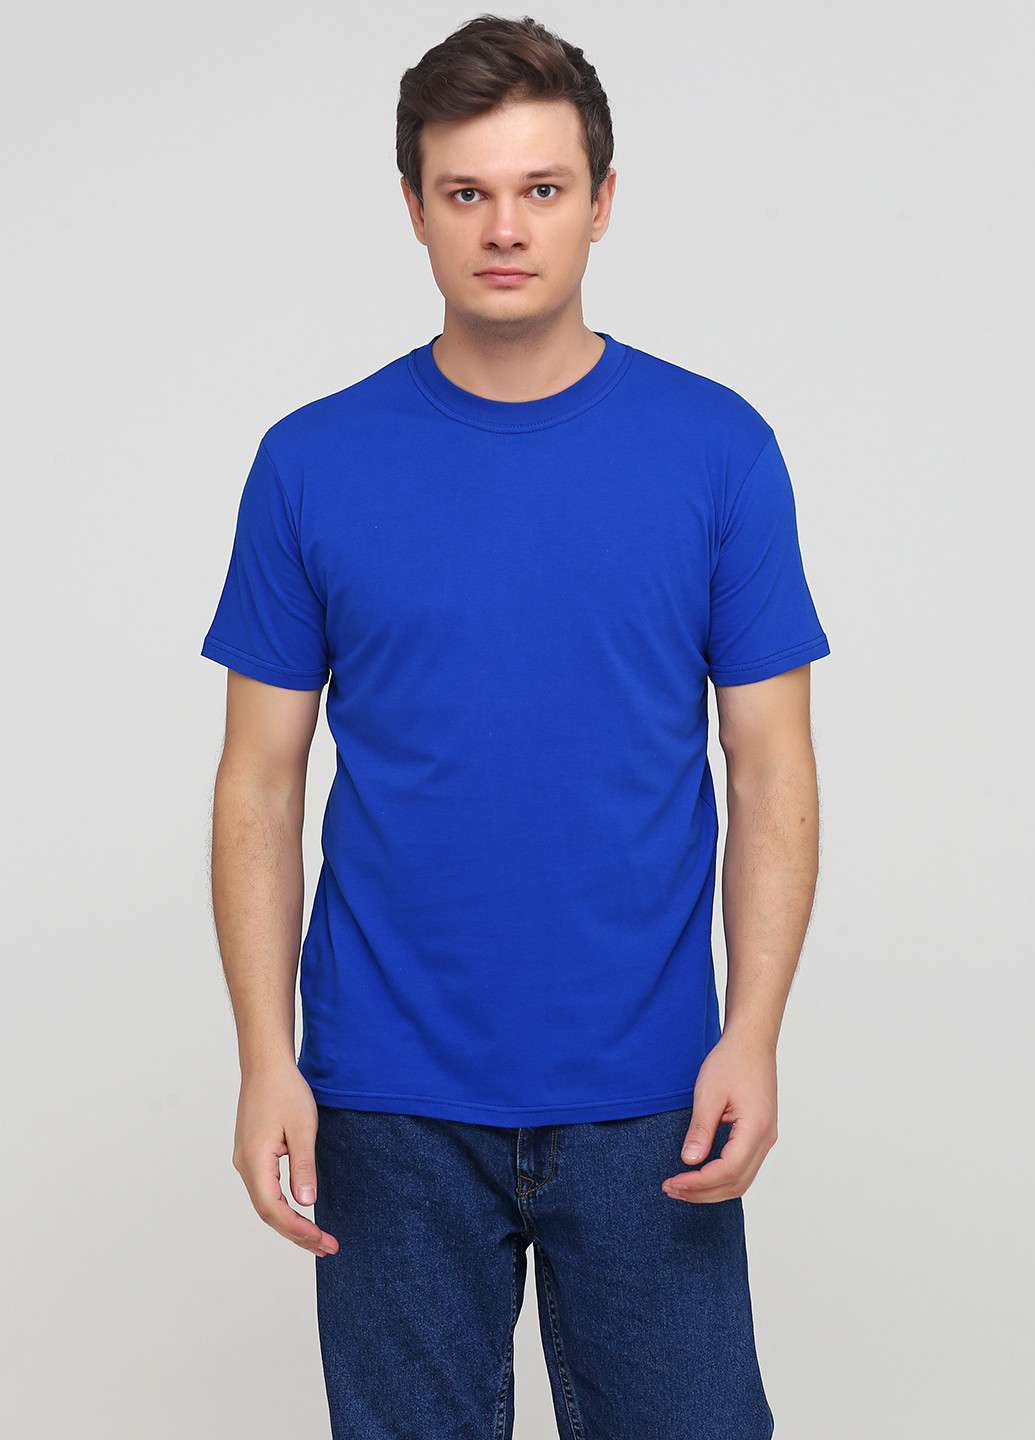 Синя футболка чоловіча 19м319-17 синя(електро) з коротким рукавом Malta